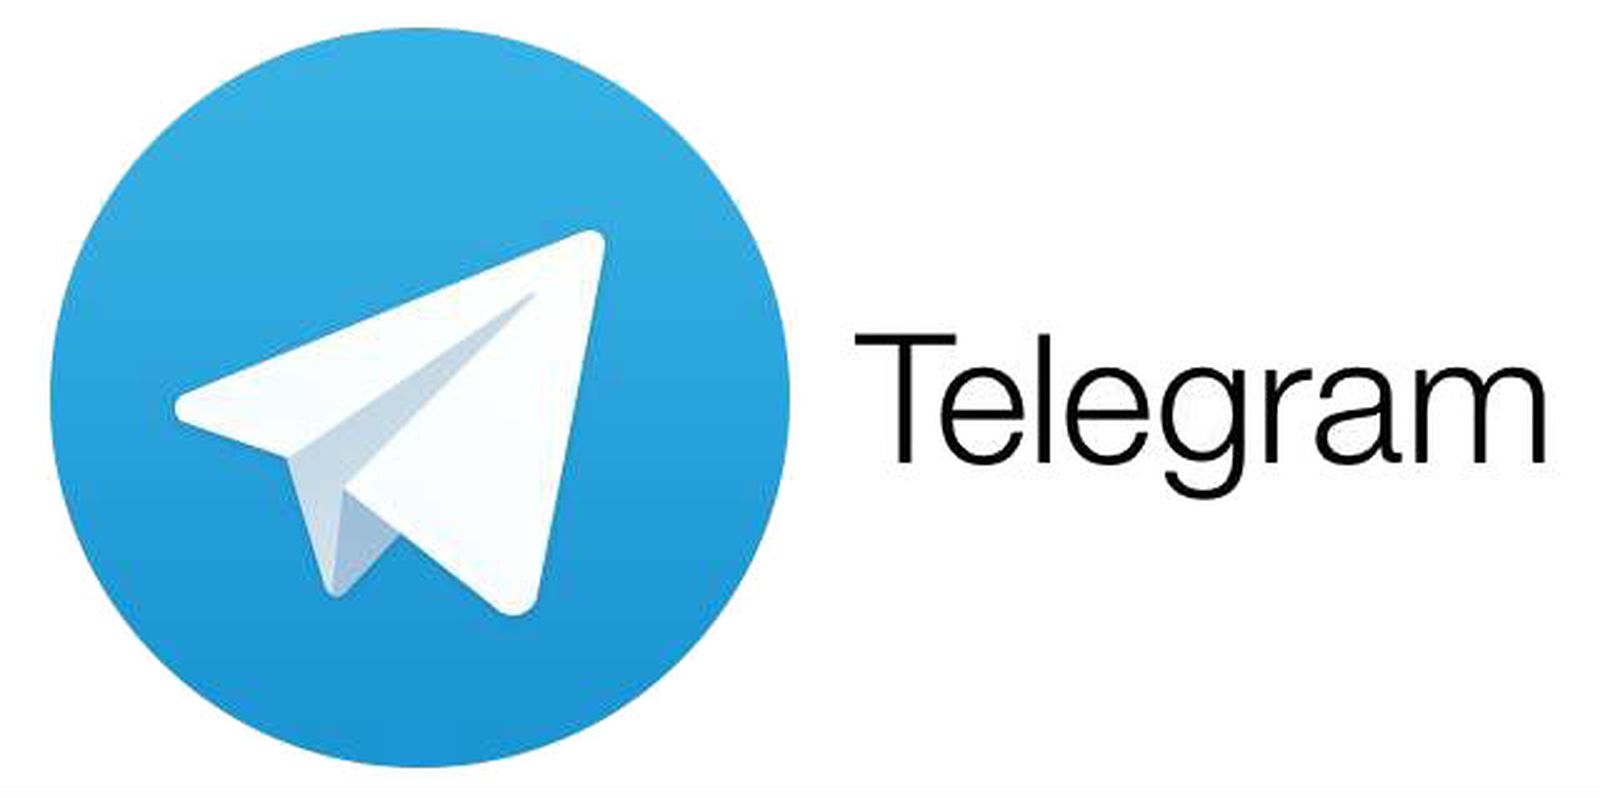 4 Cara Mengembangkan Bisnis Online Lewat Fitur Telegram
(ilustrasi)